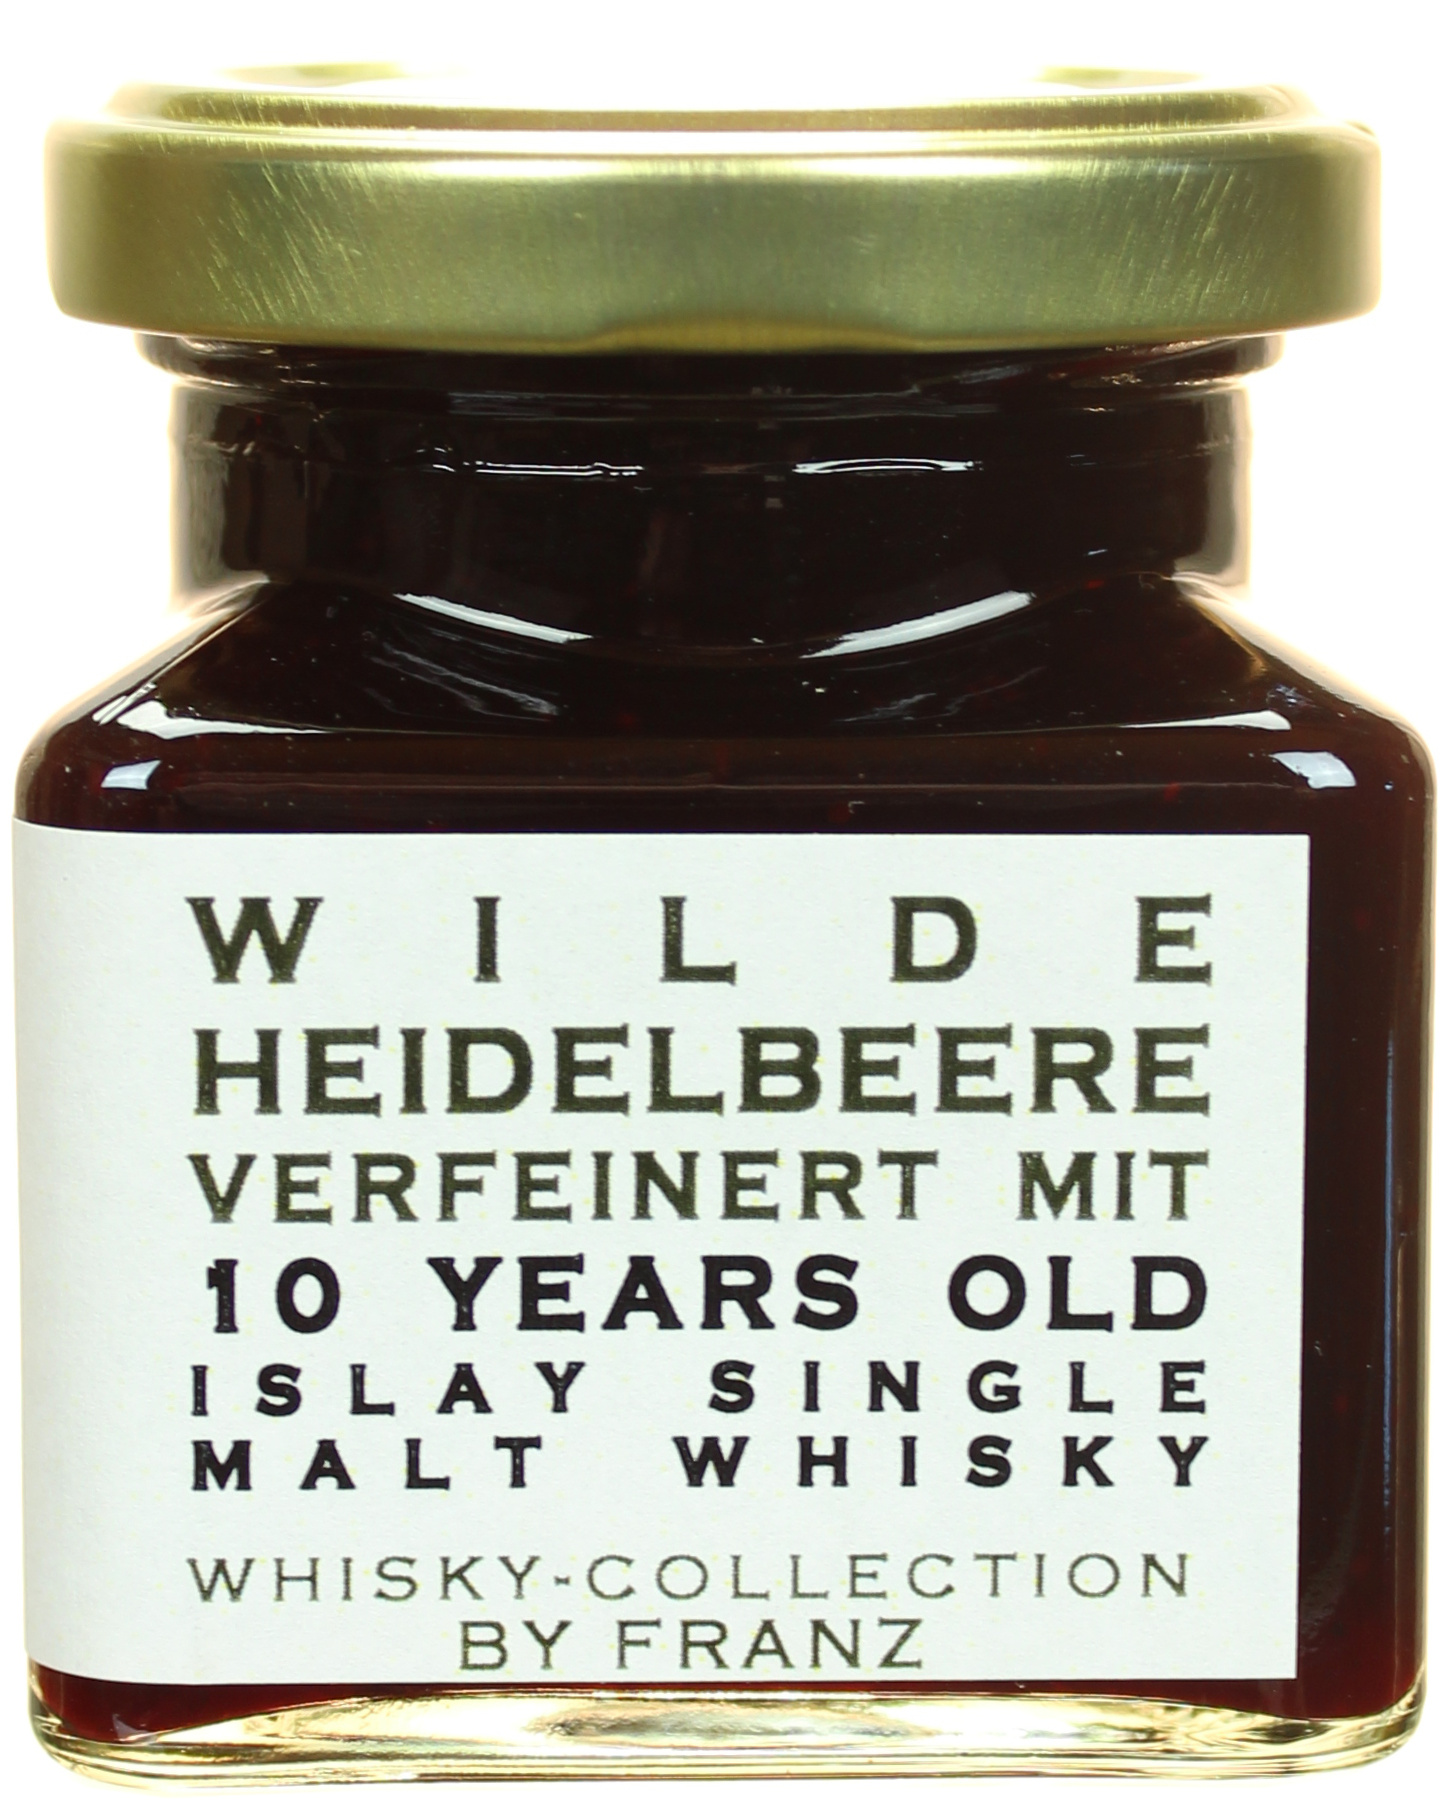 Heidelbeere mit Islay Malt Whisky 10 Jahre 150g